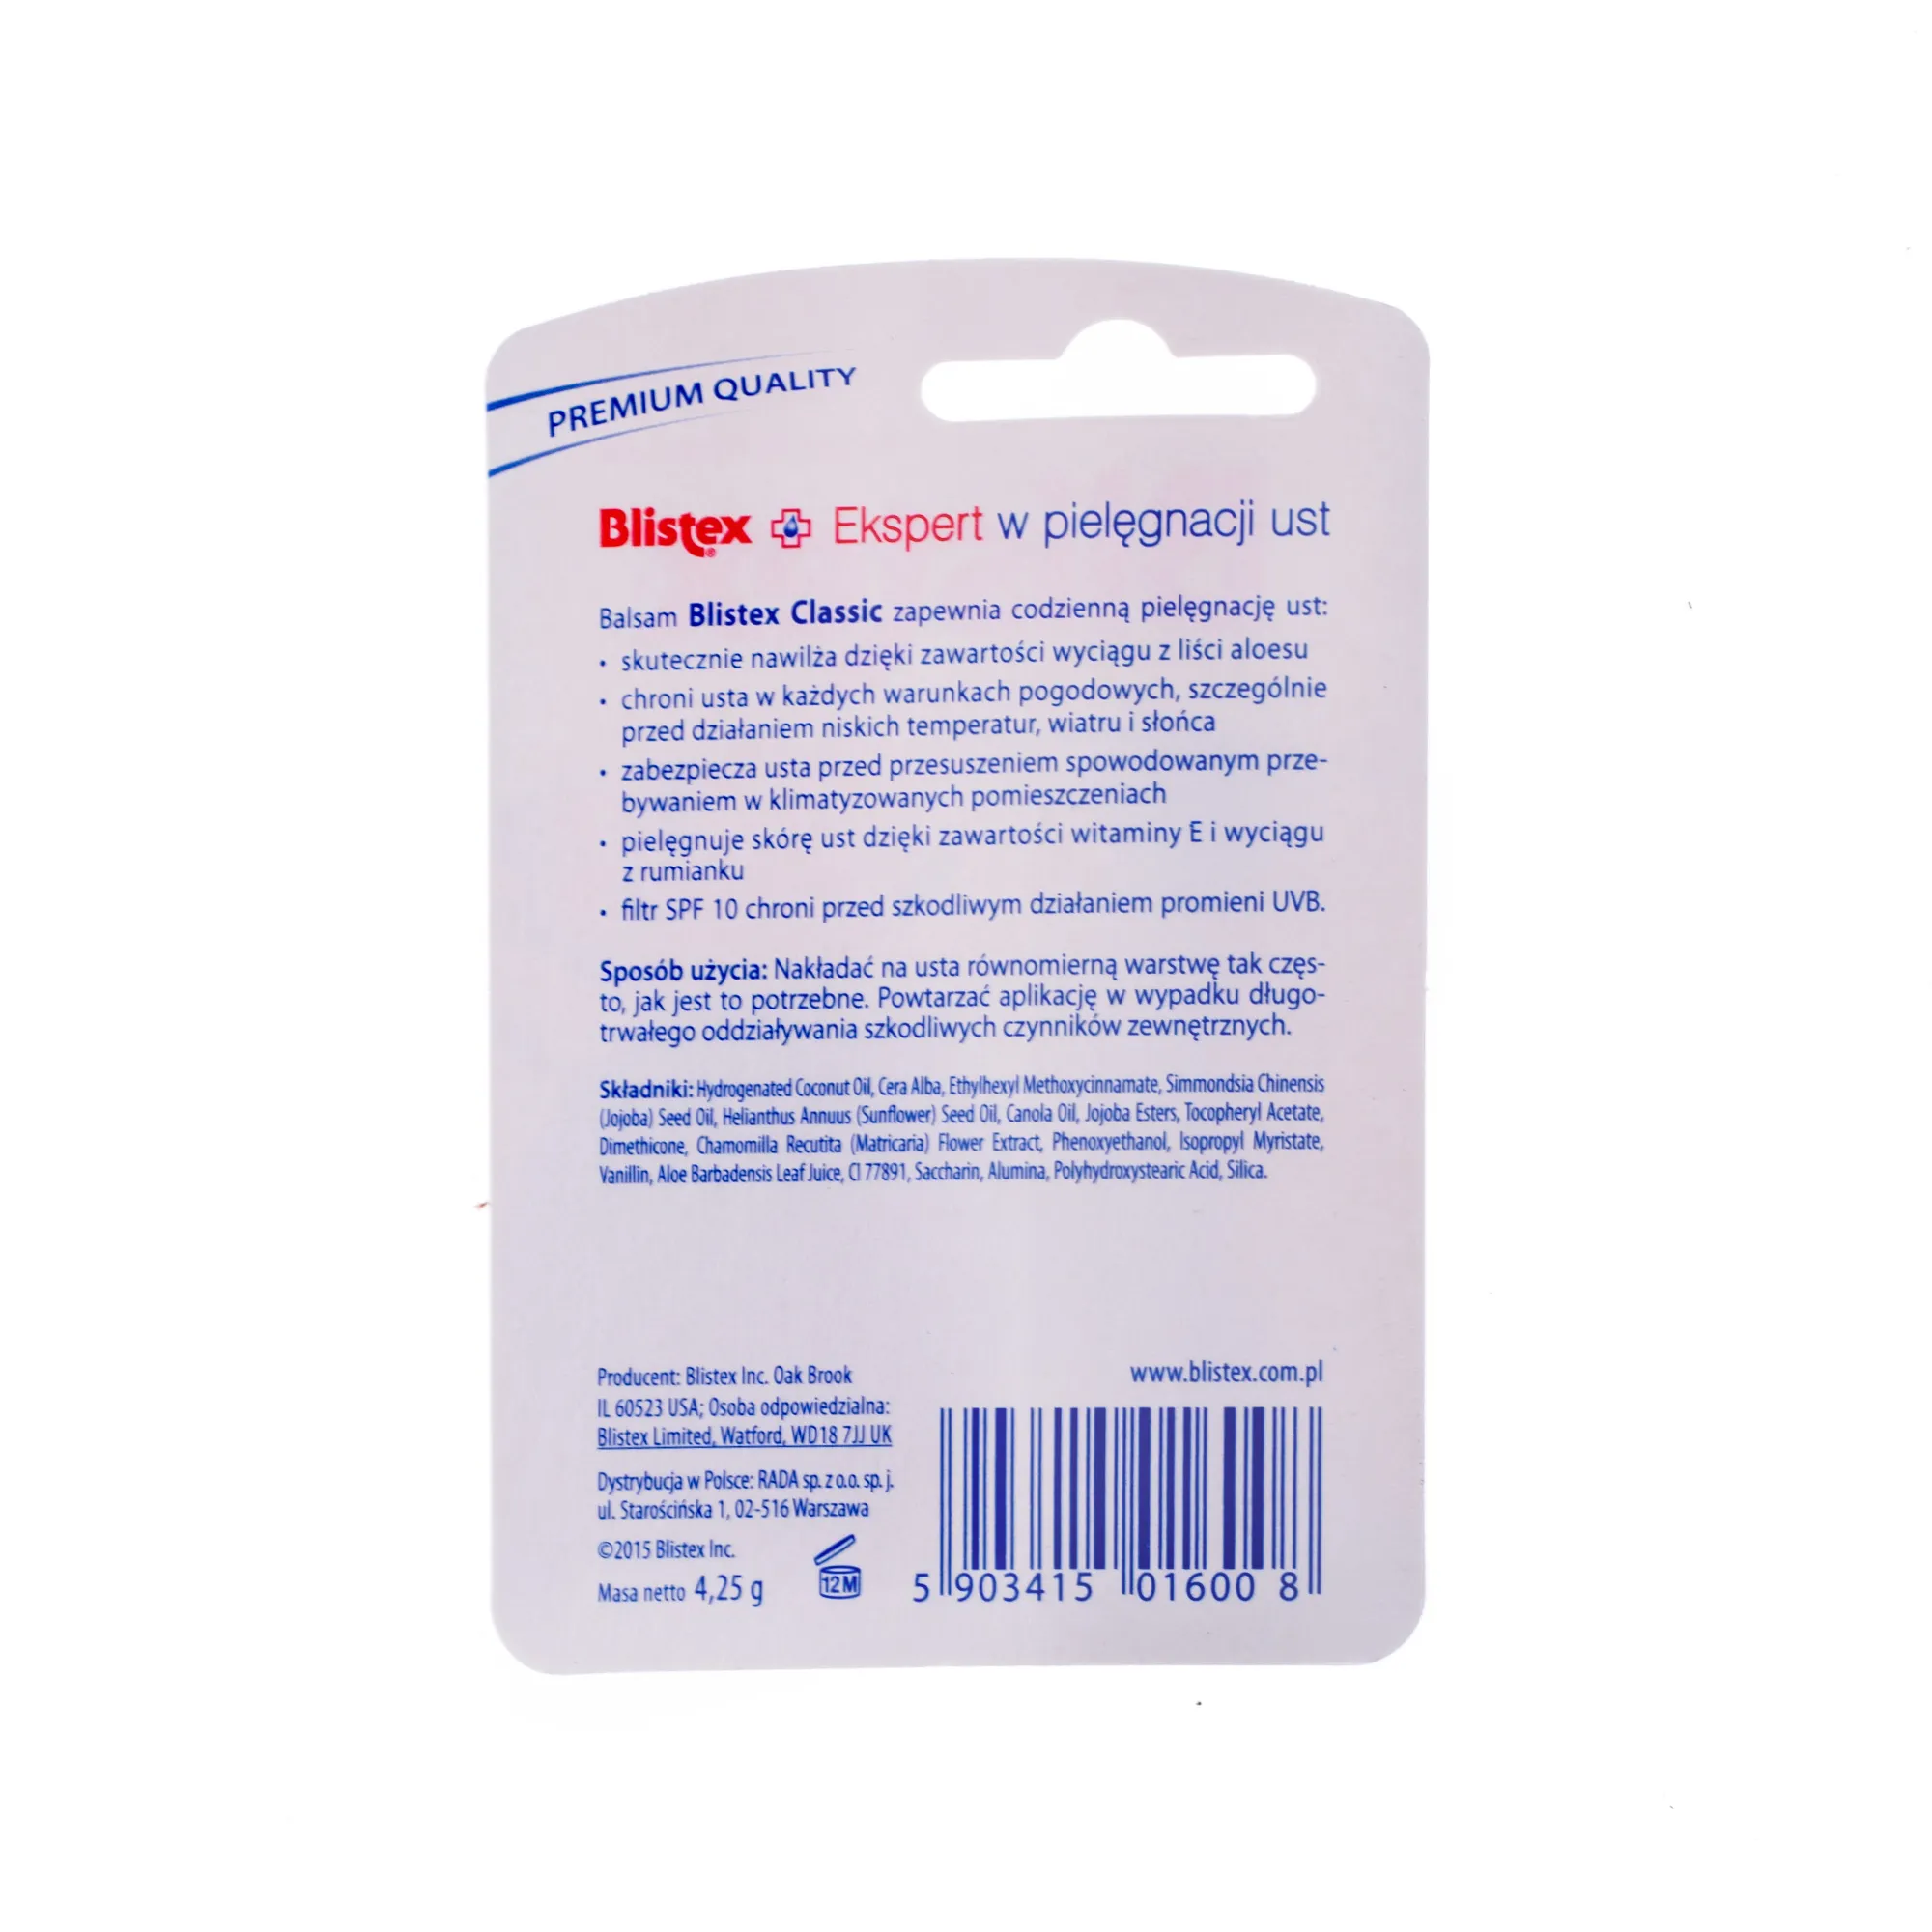 Blistex Classic, balsam, który nawilża i chroni skórę ust, 4,25 g 